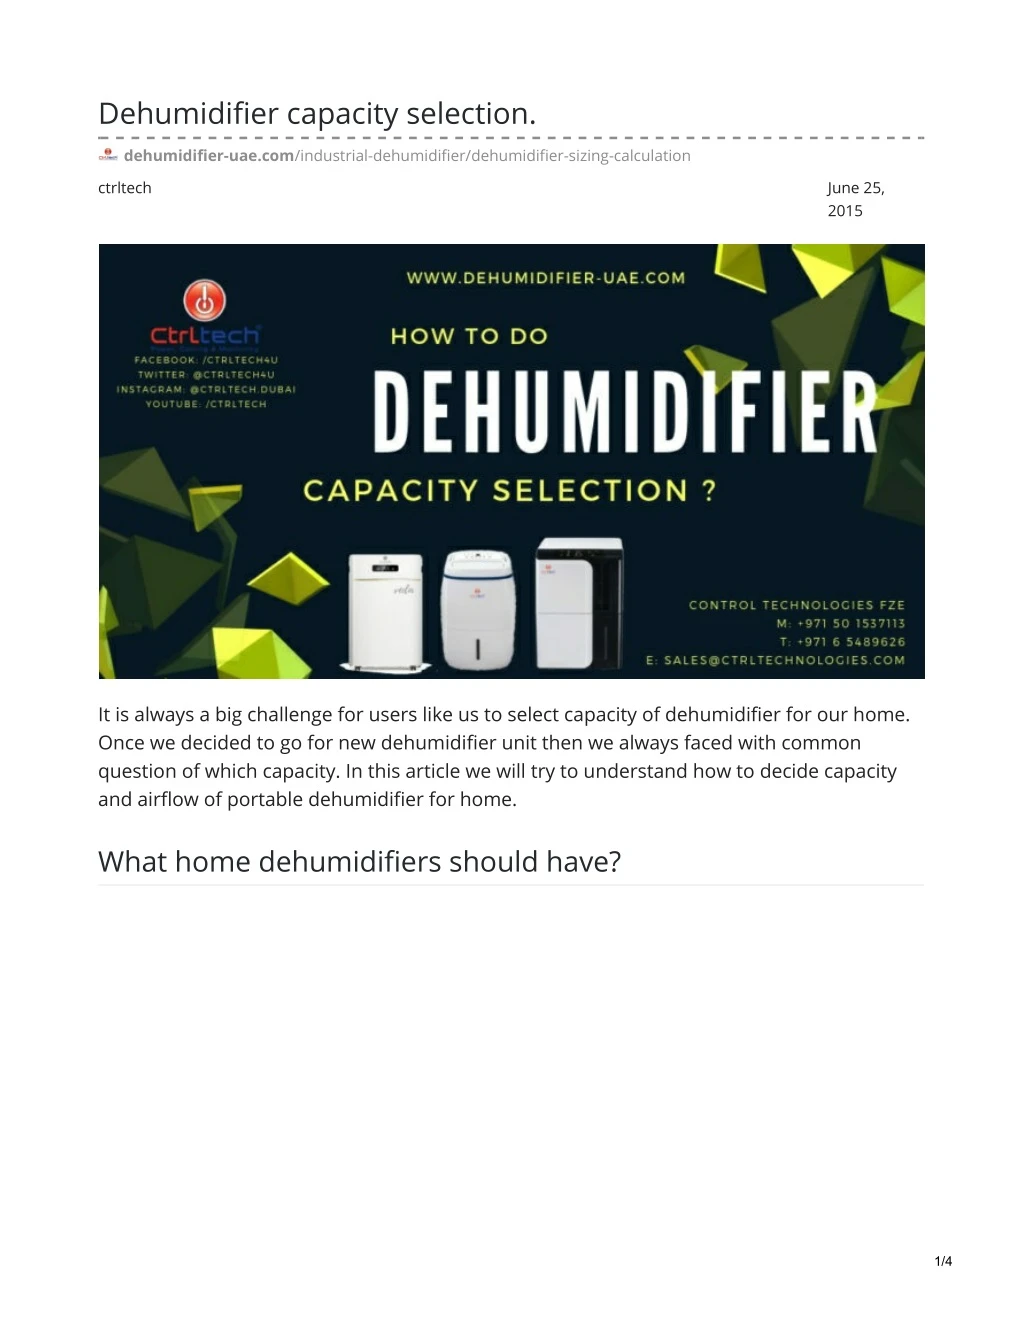 dehumidifier capacity selection